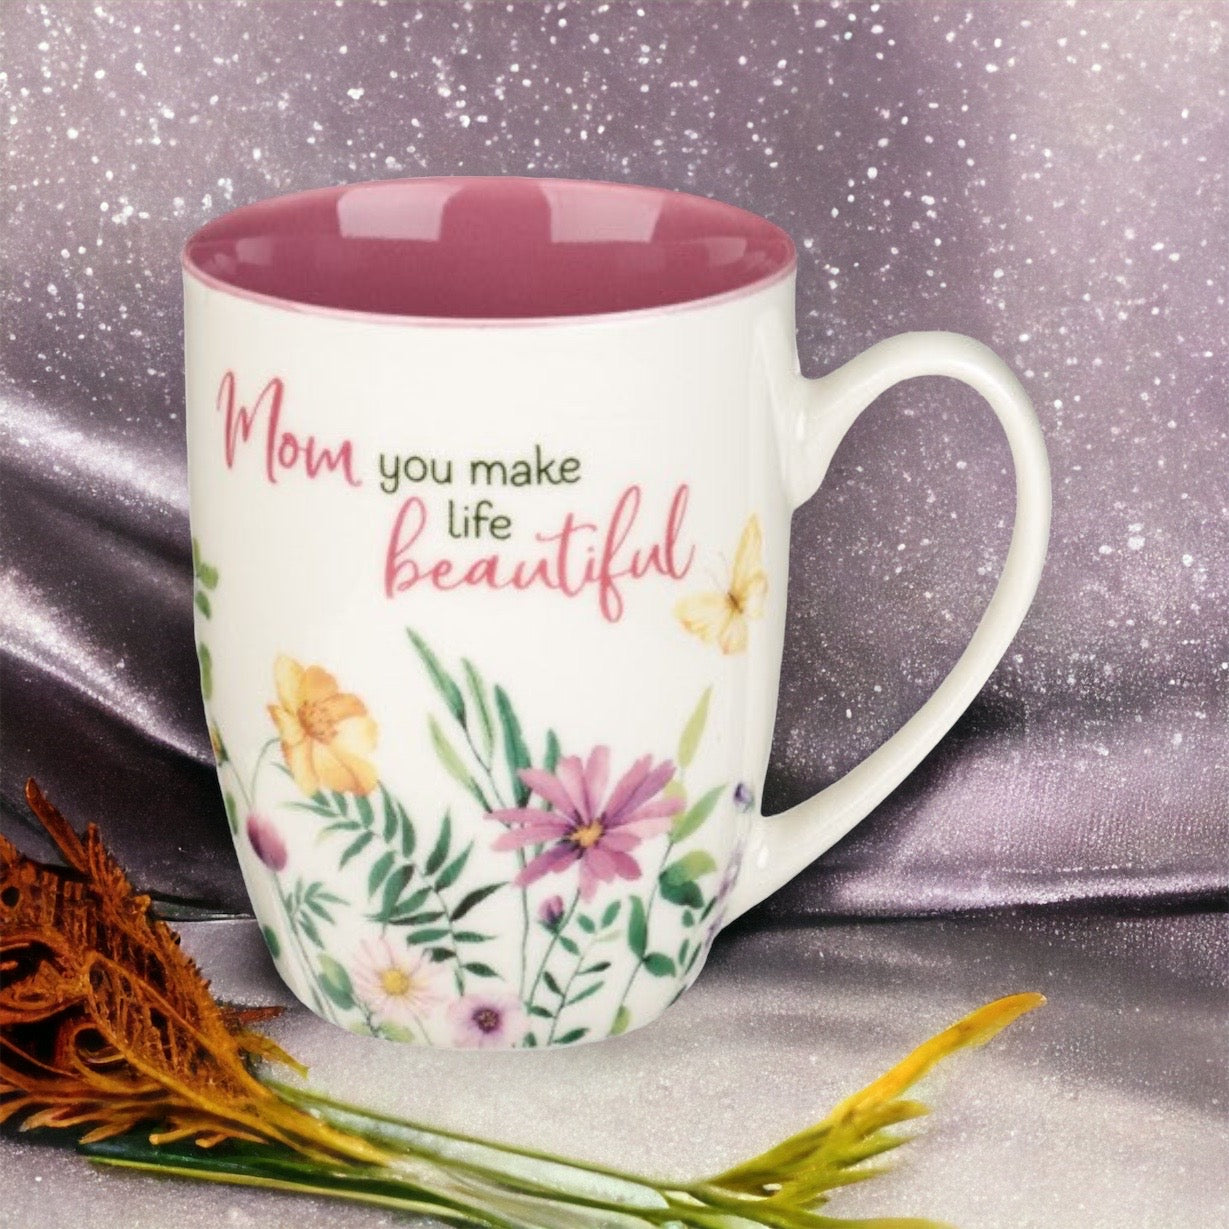 Mom Make Life Beautiful Mug